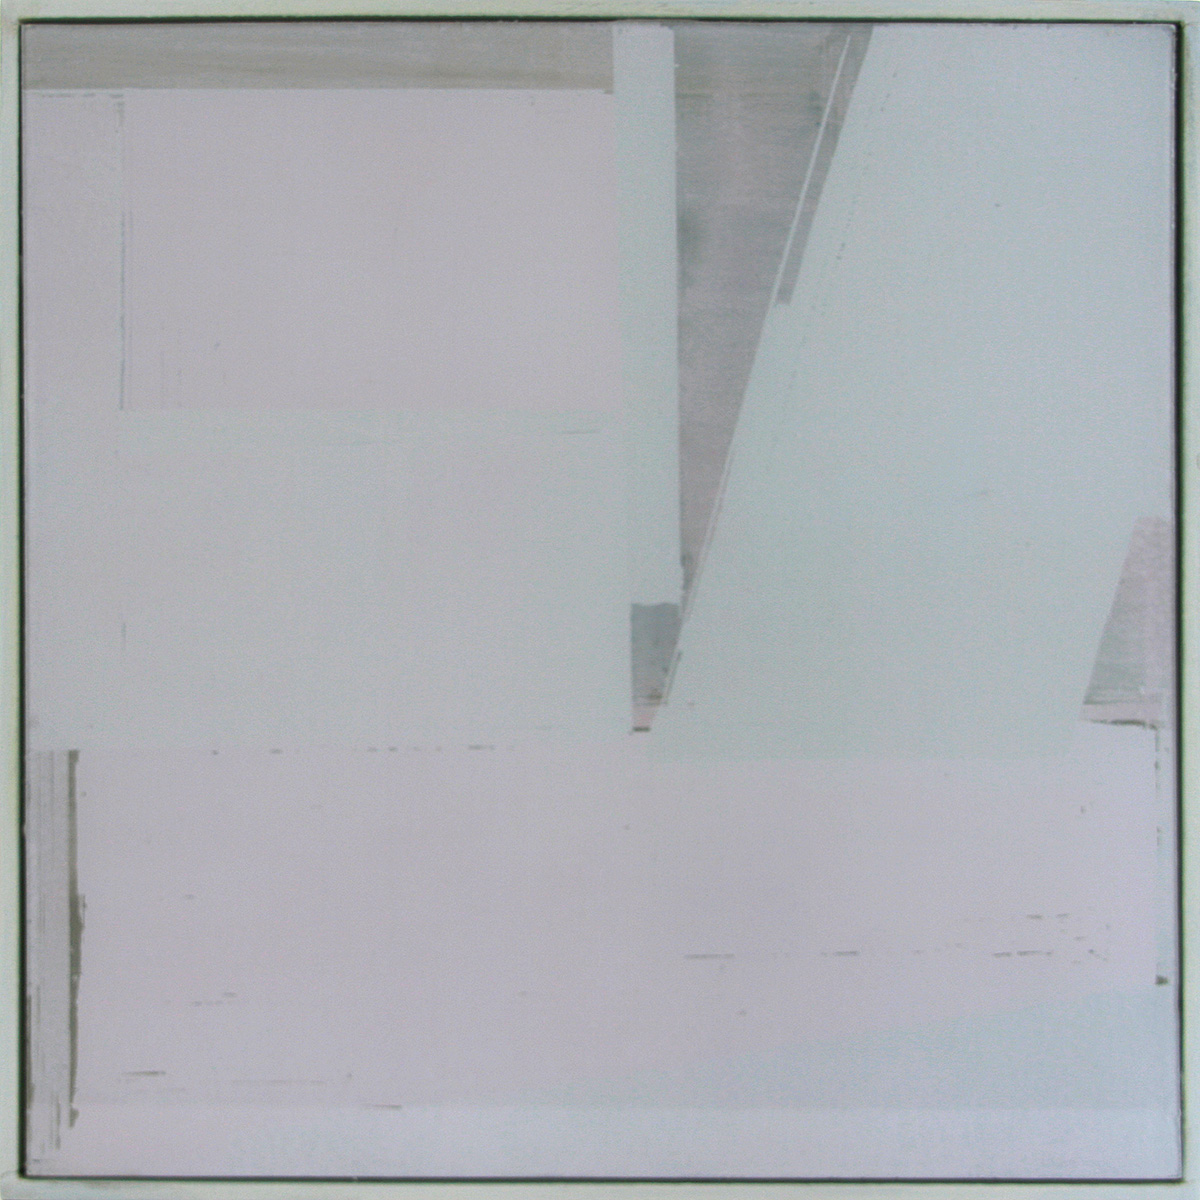 Auf-Glas-Malerei 3 / Schichtungen, 201630 x 30 cmPigment, grounded on glass, framed